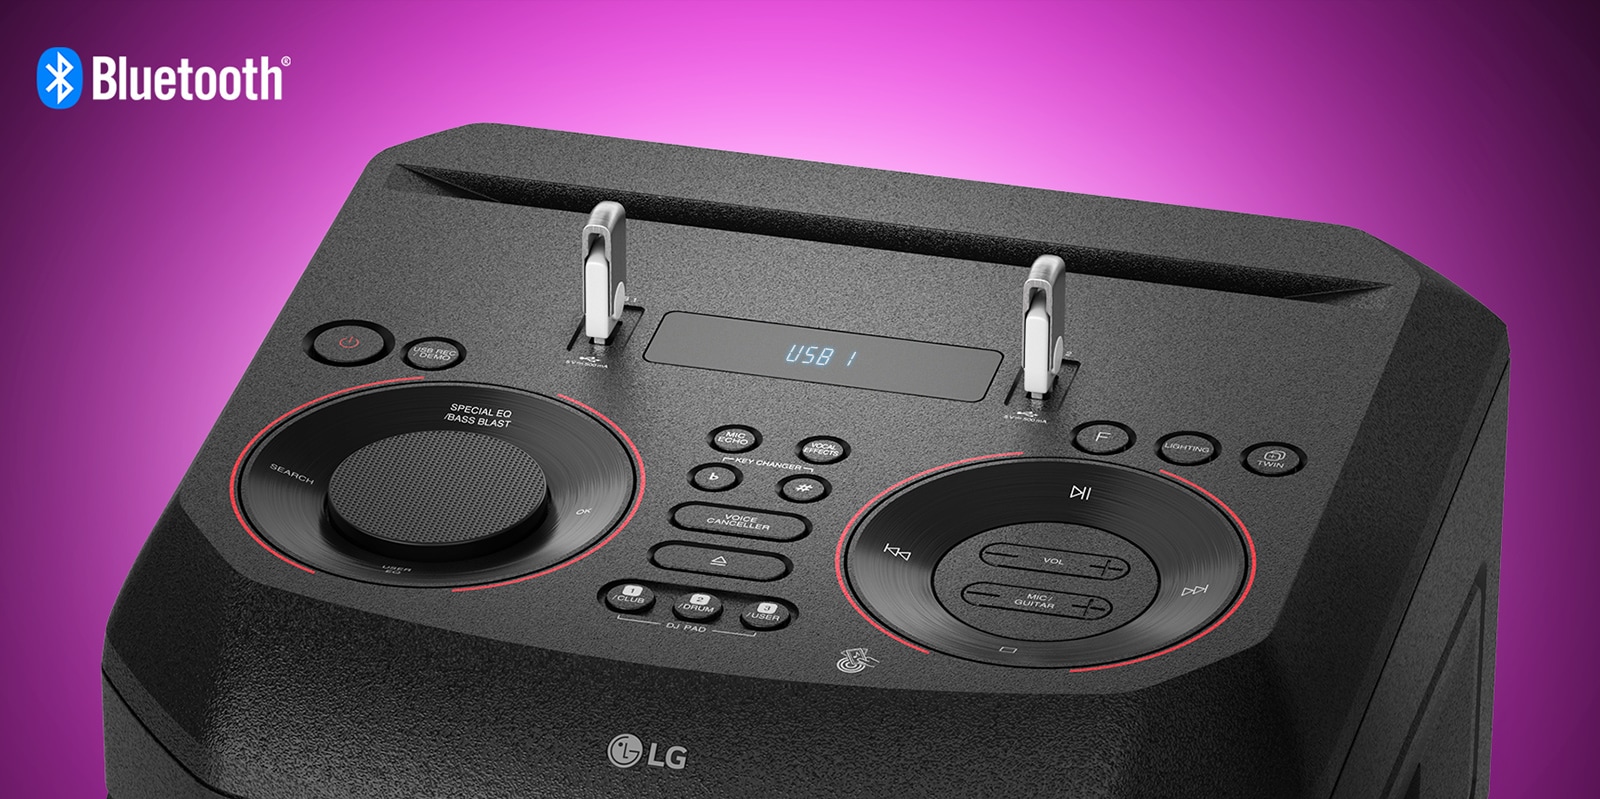 صورة مقربة لعناصر التحكم أعلى جهاز LG XBOOM، مع توصيل جهازي USB. يظهر شعار Bluetooth في الزاوية اليسرى العليا.